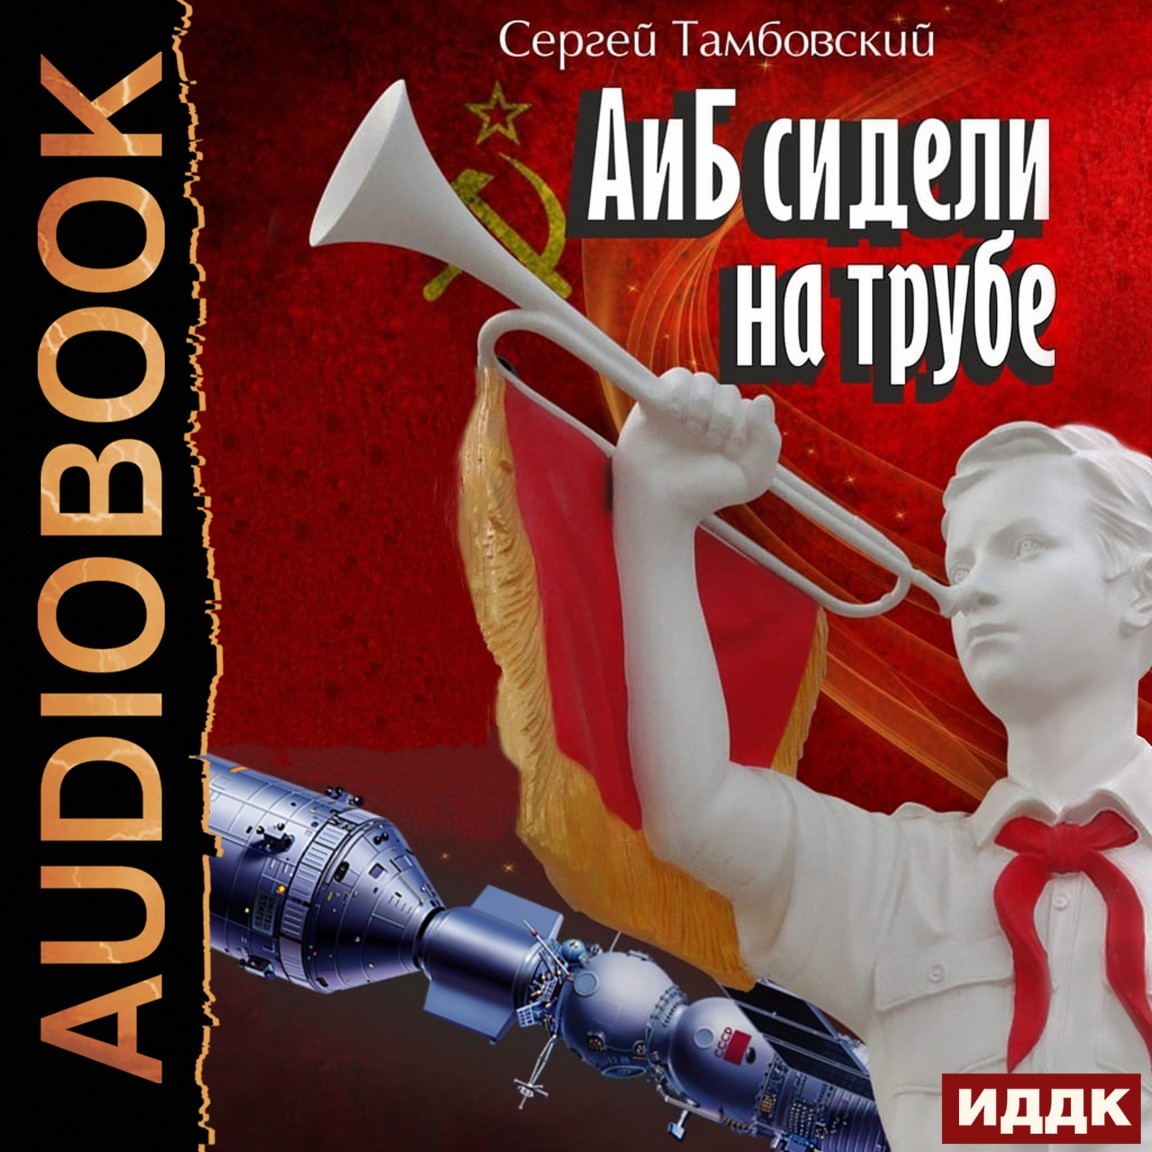 А и Б. Книга 1. А и Б сидели на трубе - Тамбовский Сергей